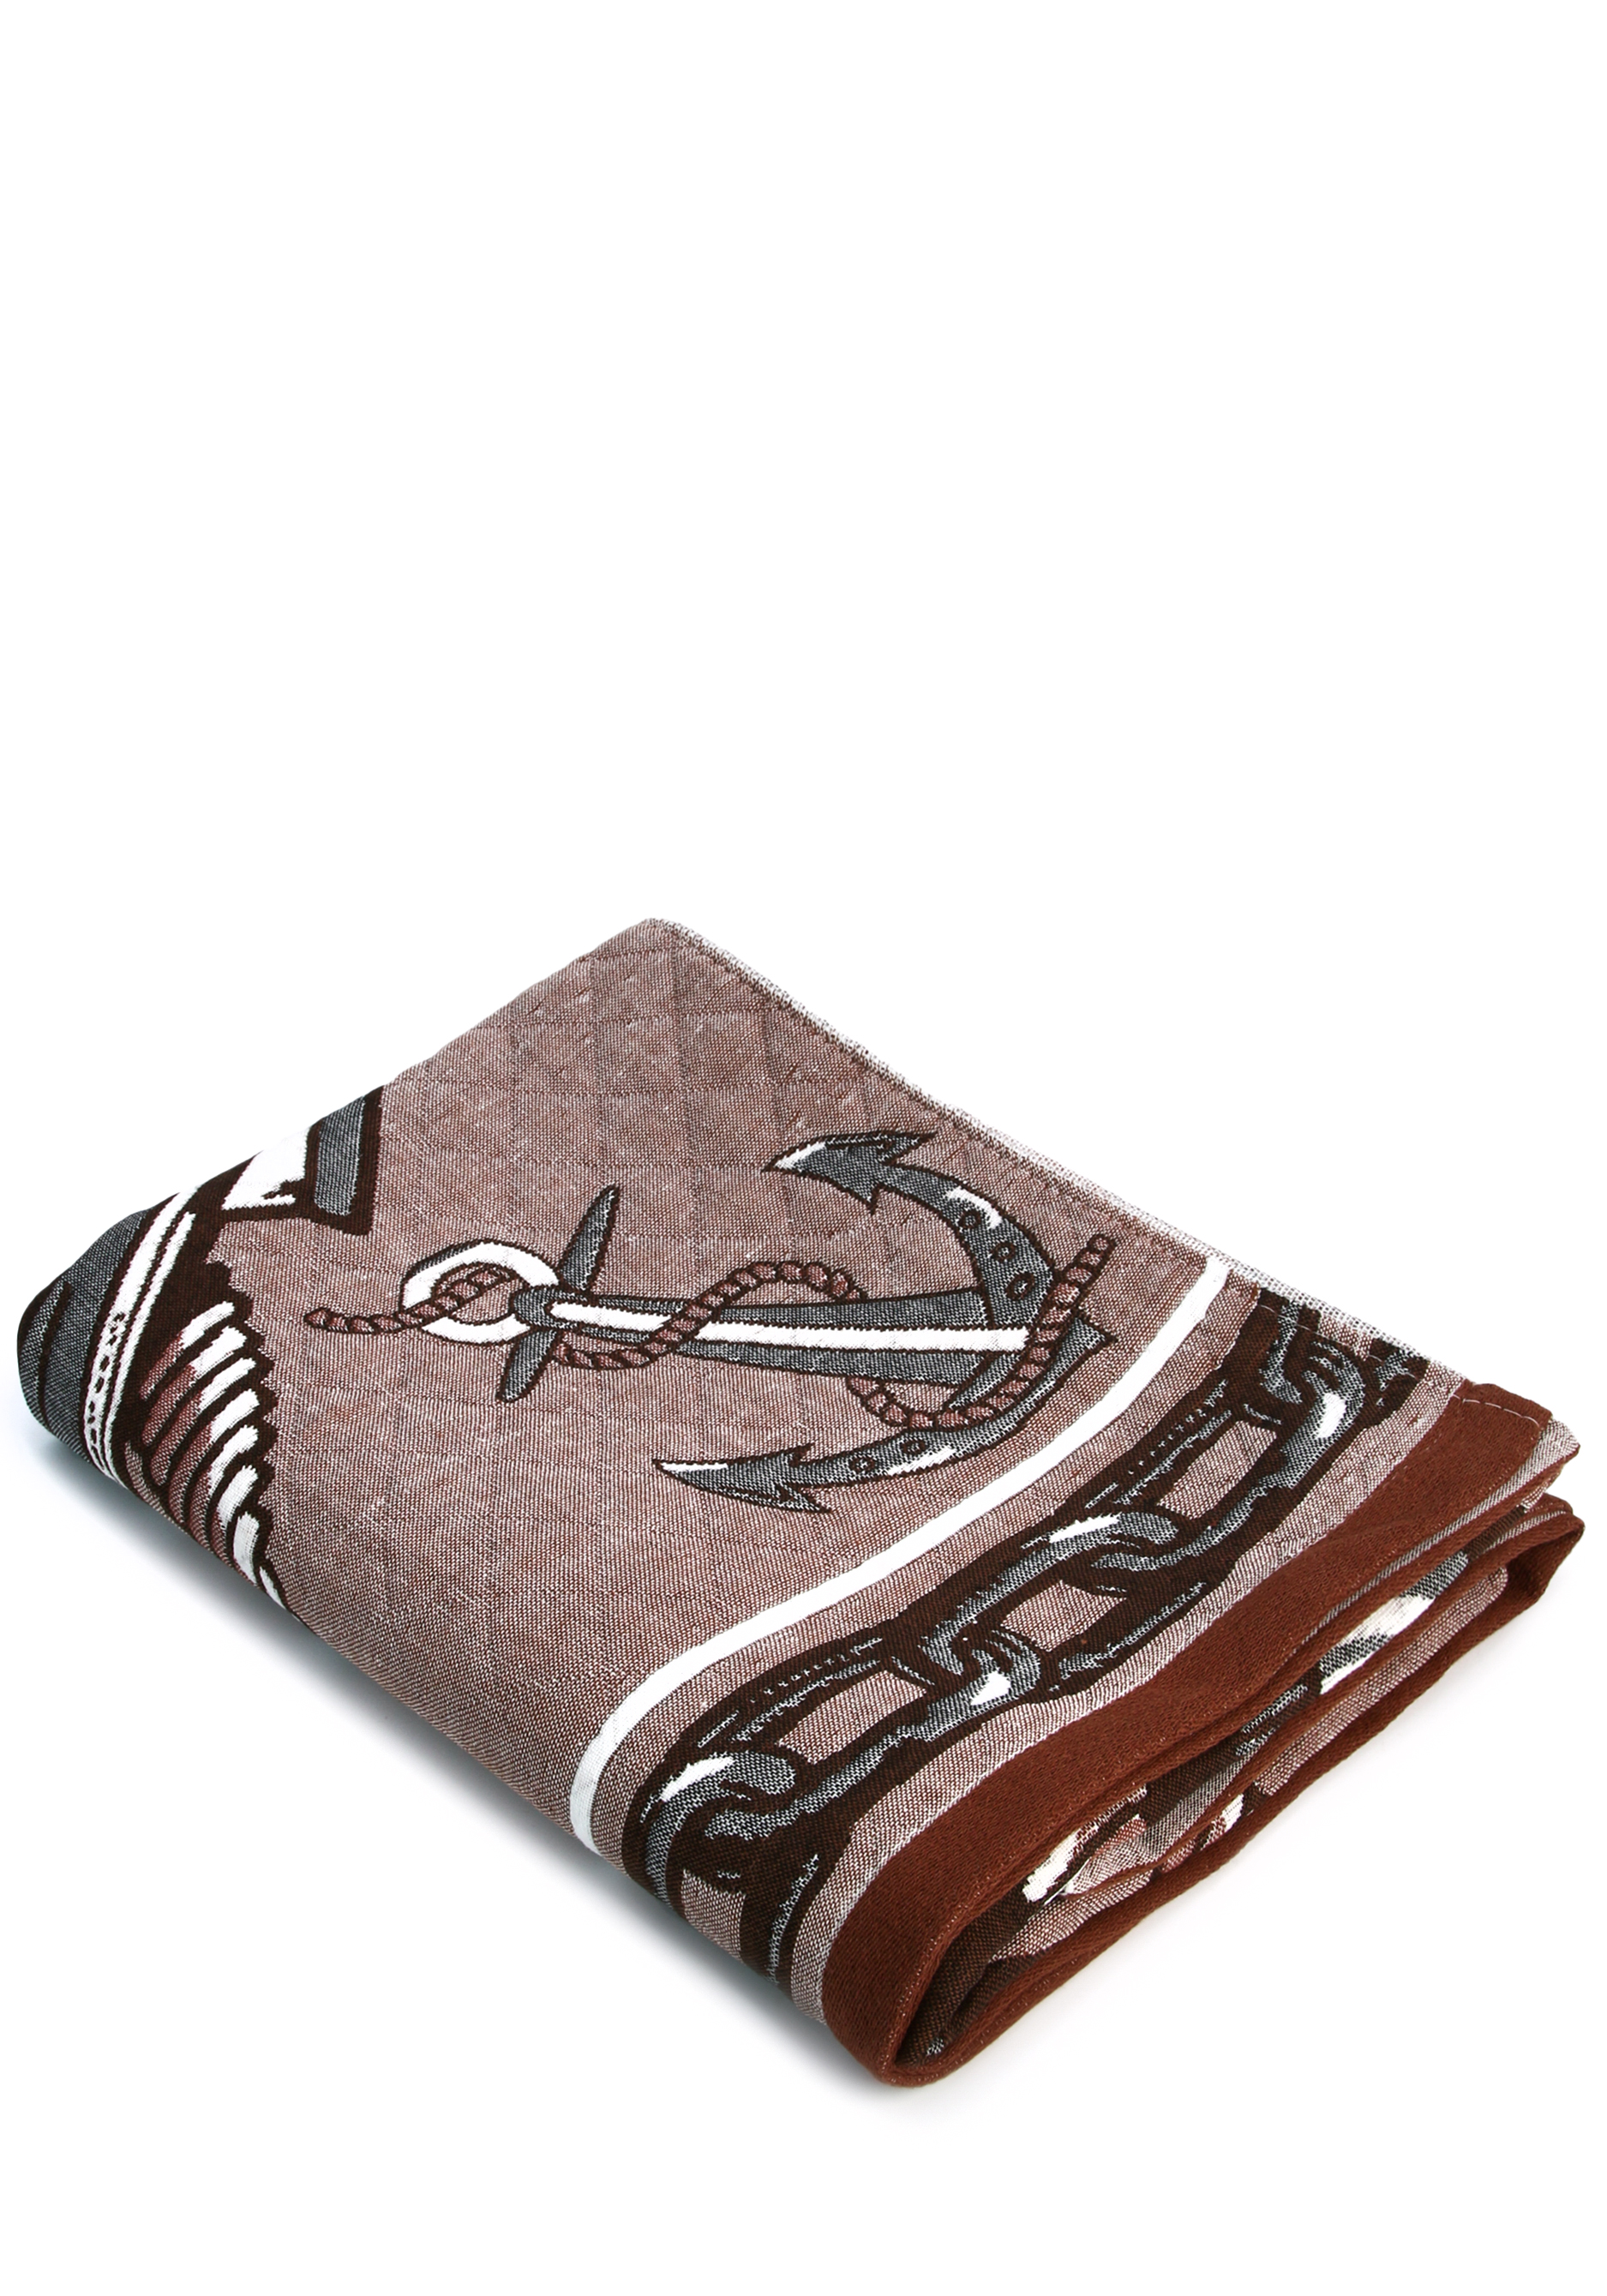 Полотенце стеганое "Реванш", цвет коричневый, размер 50*100 - фото 9